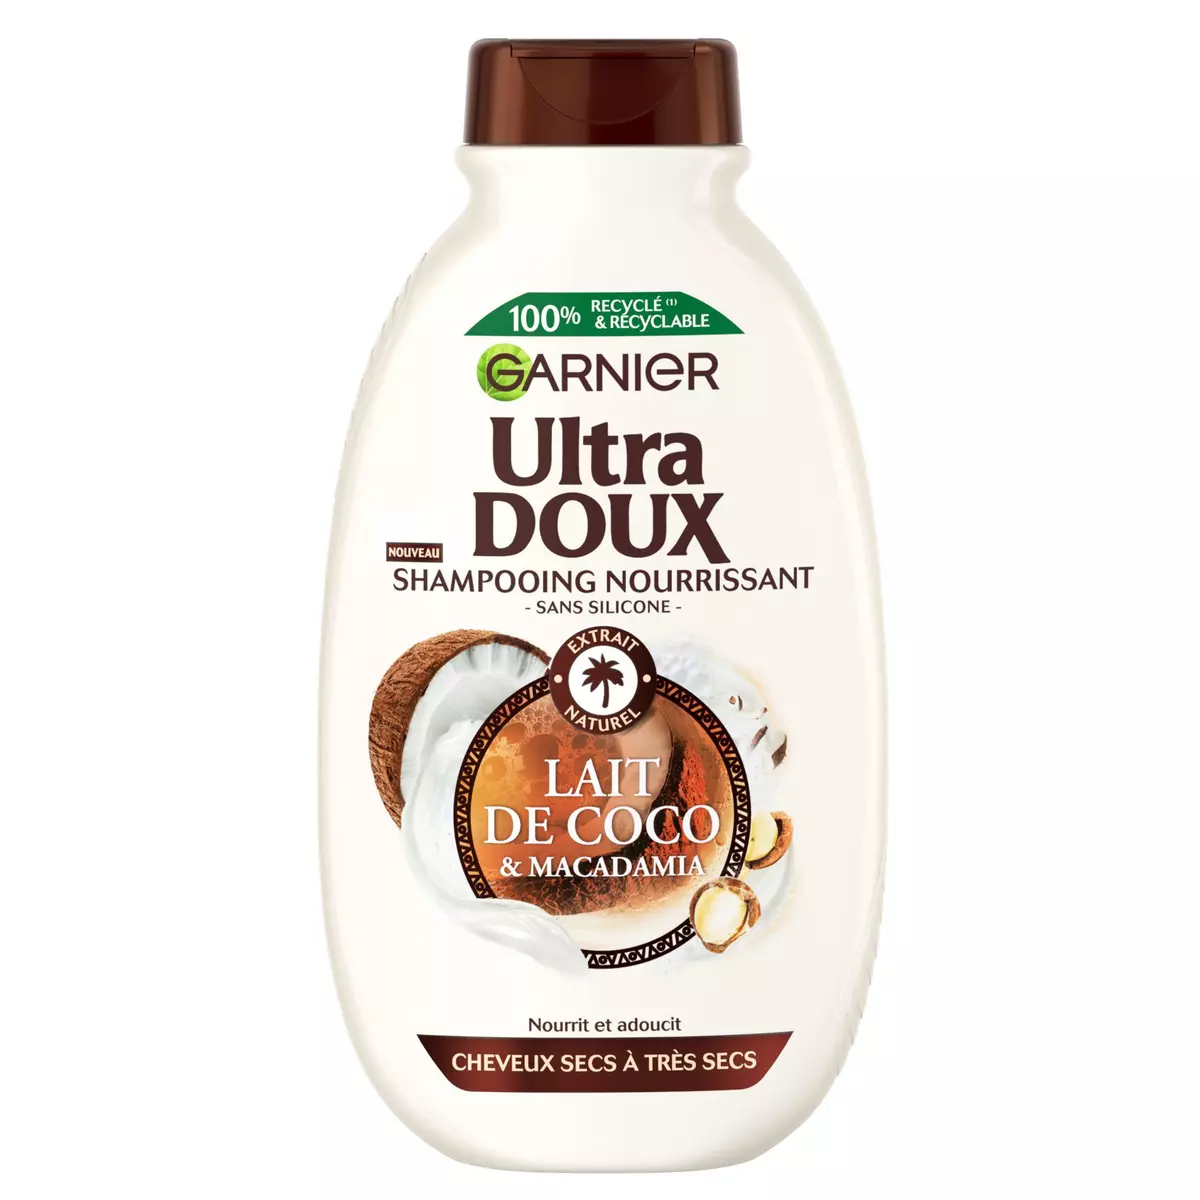 GARNIER ULTRA DOUX Shampooing nourrissant pour cheveux secs à très secs au lait de coco et macadamia 300ml